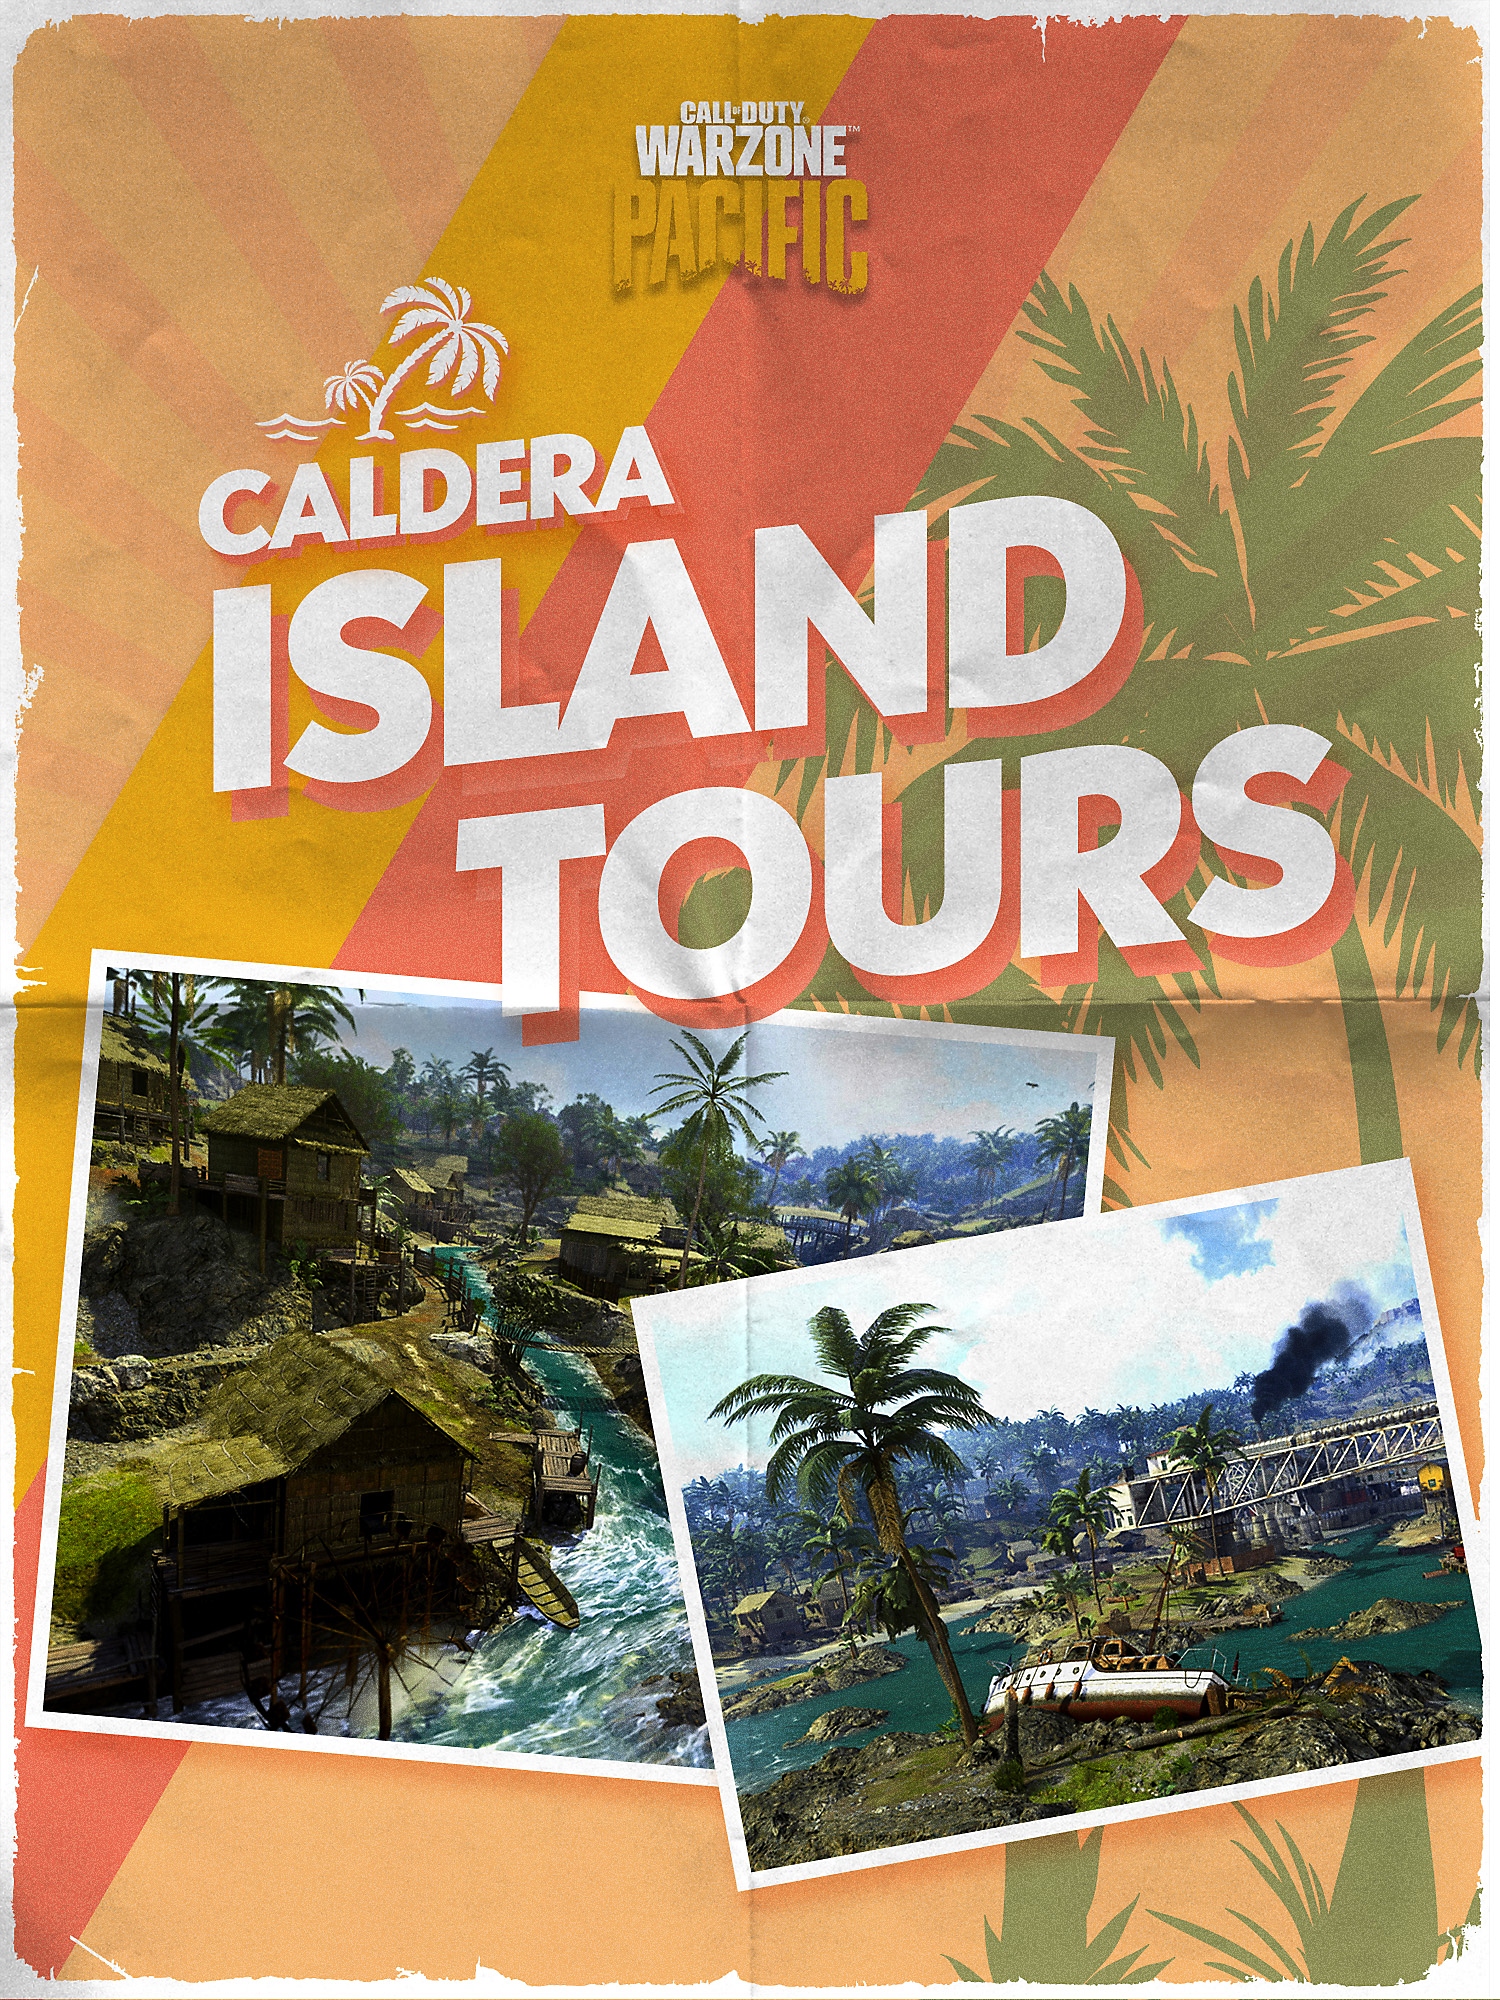 Capa do panfleto de Tours da Ilha de Caldera